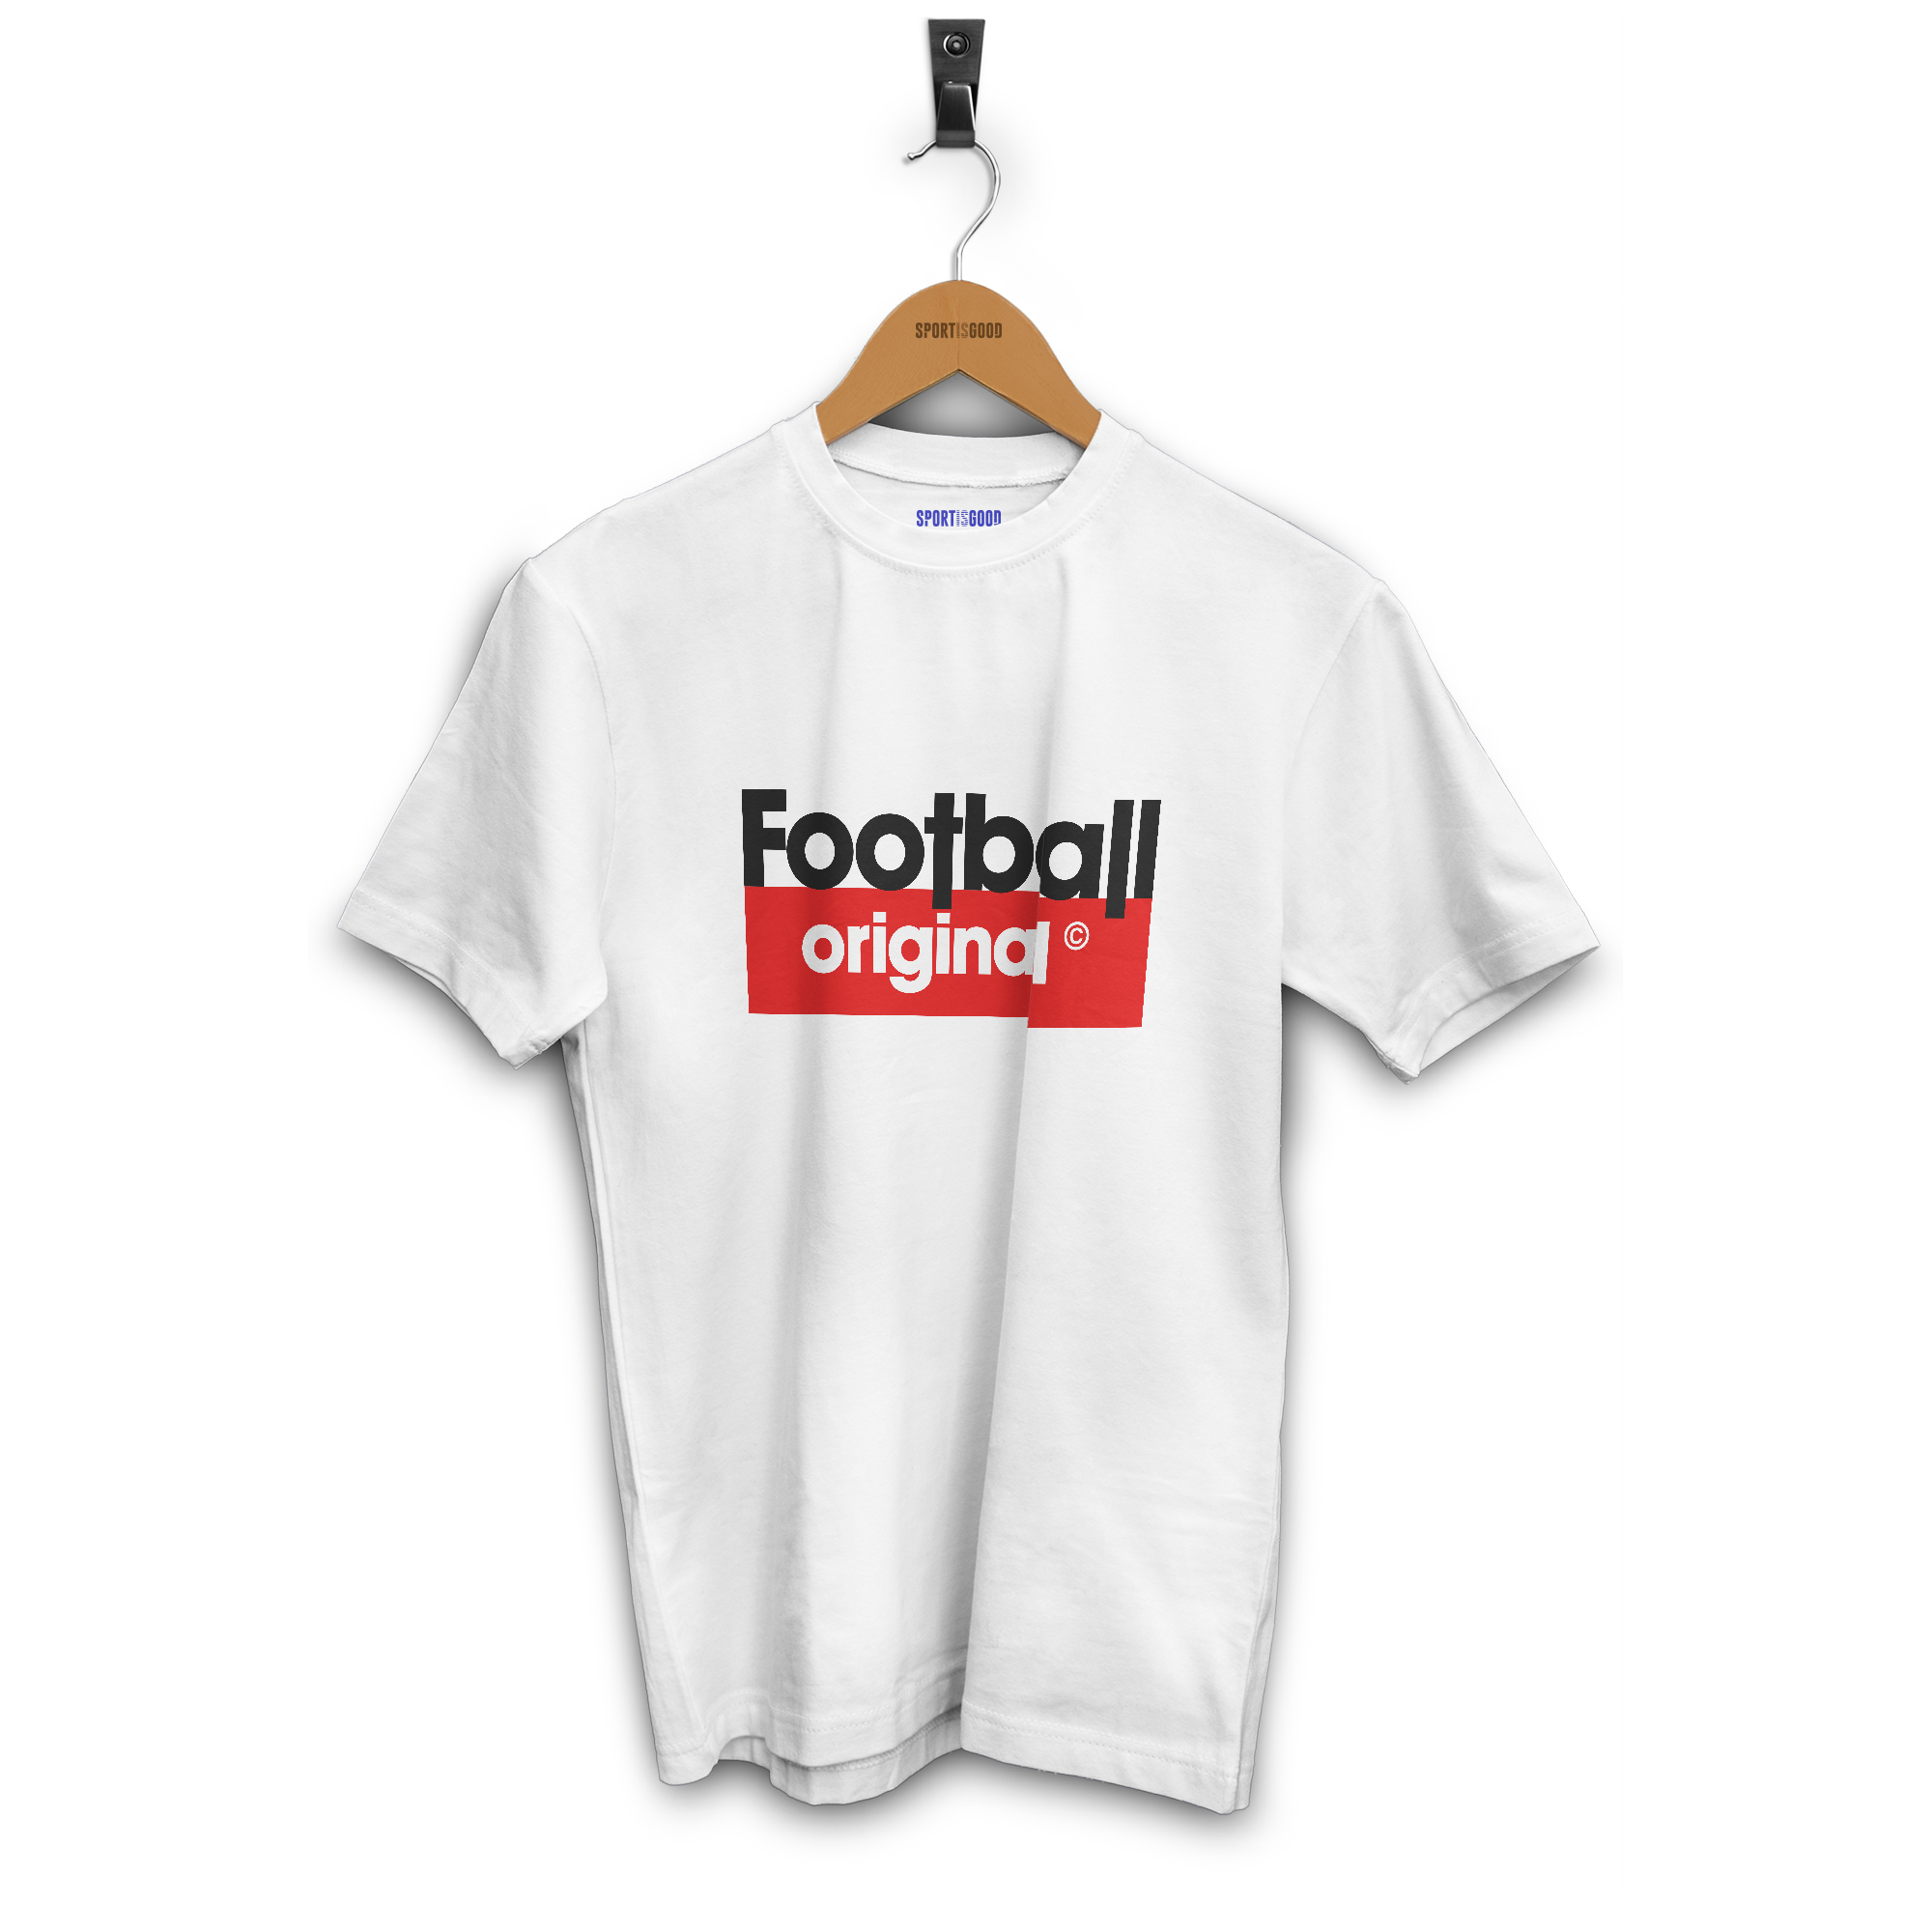 T-shirt garçon Football original